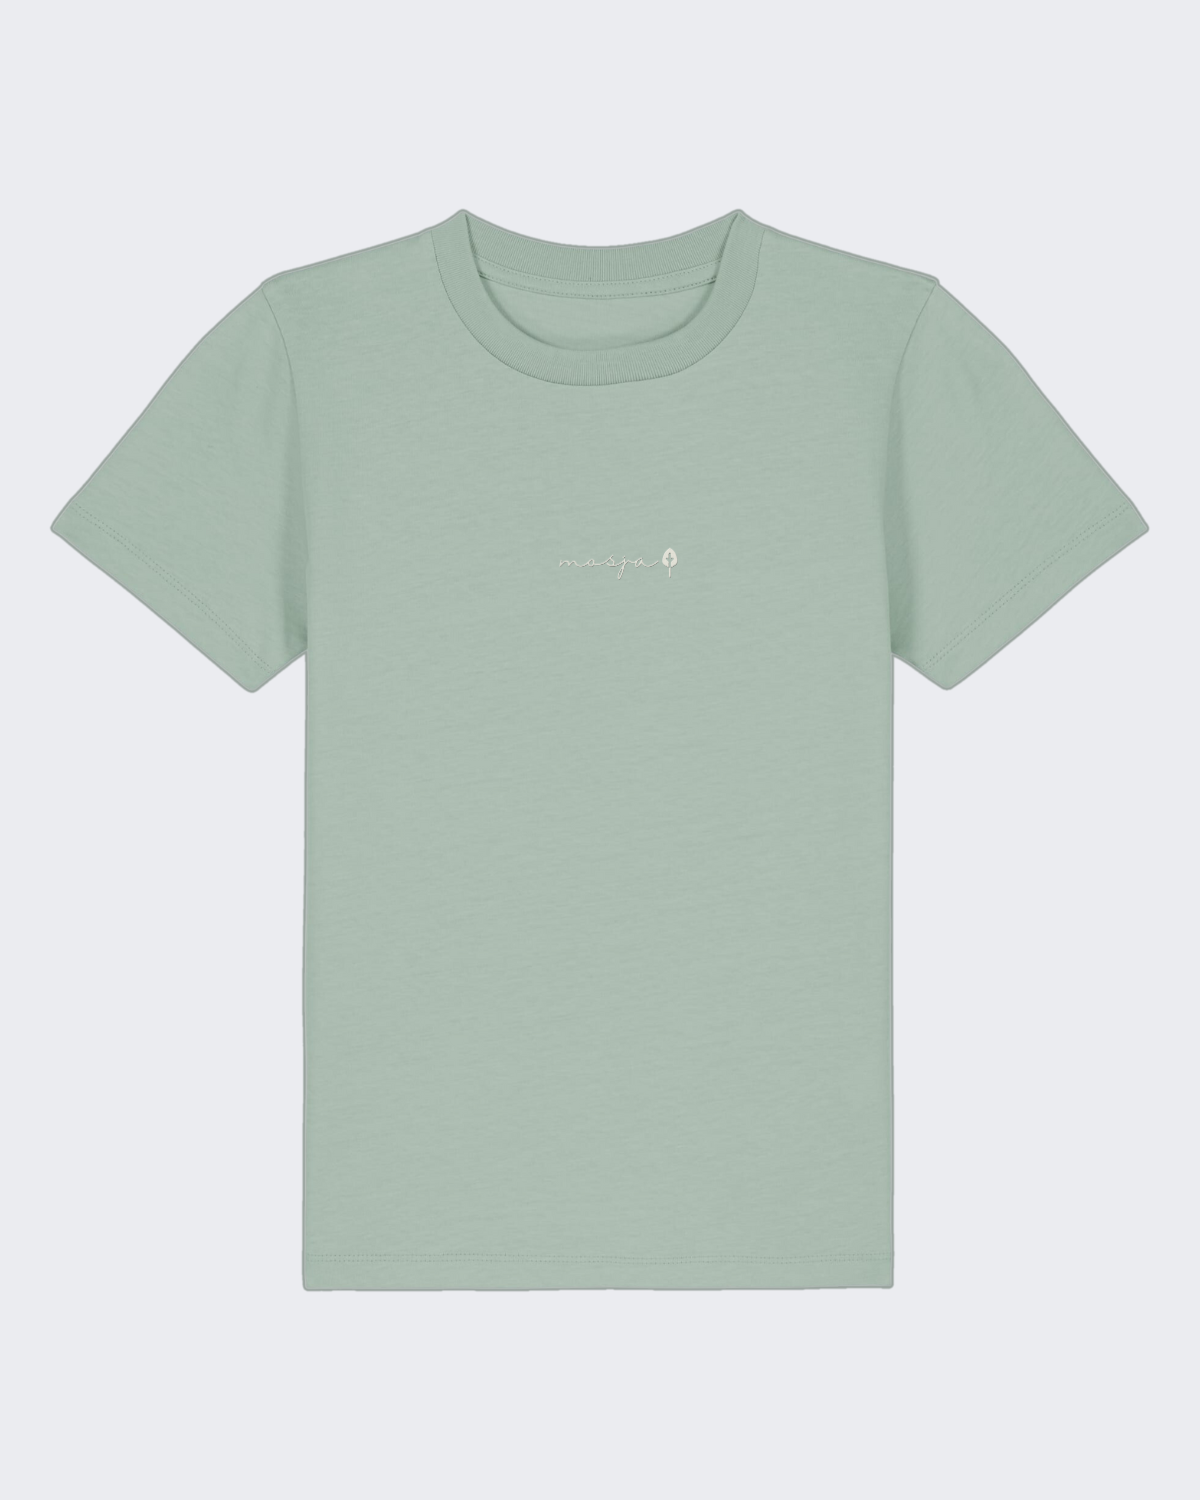 Kids-Shirt "Mint"